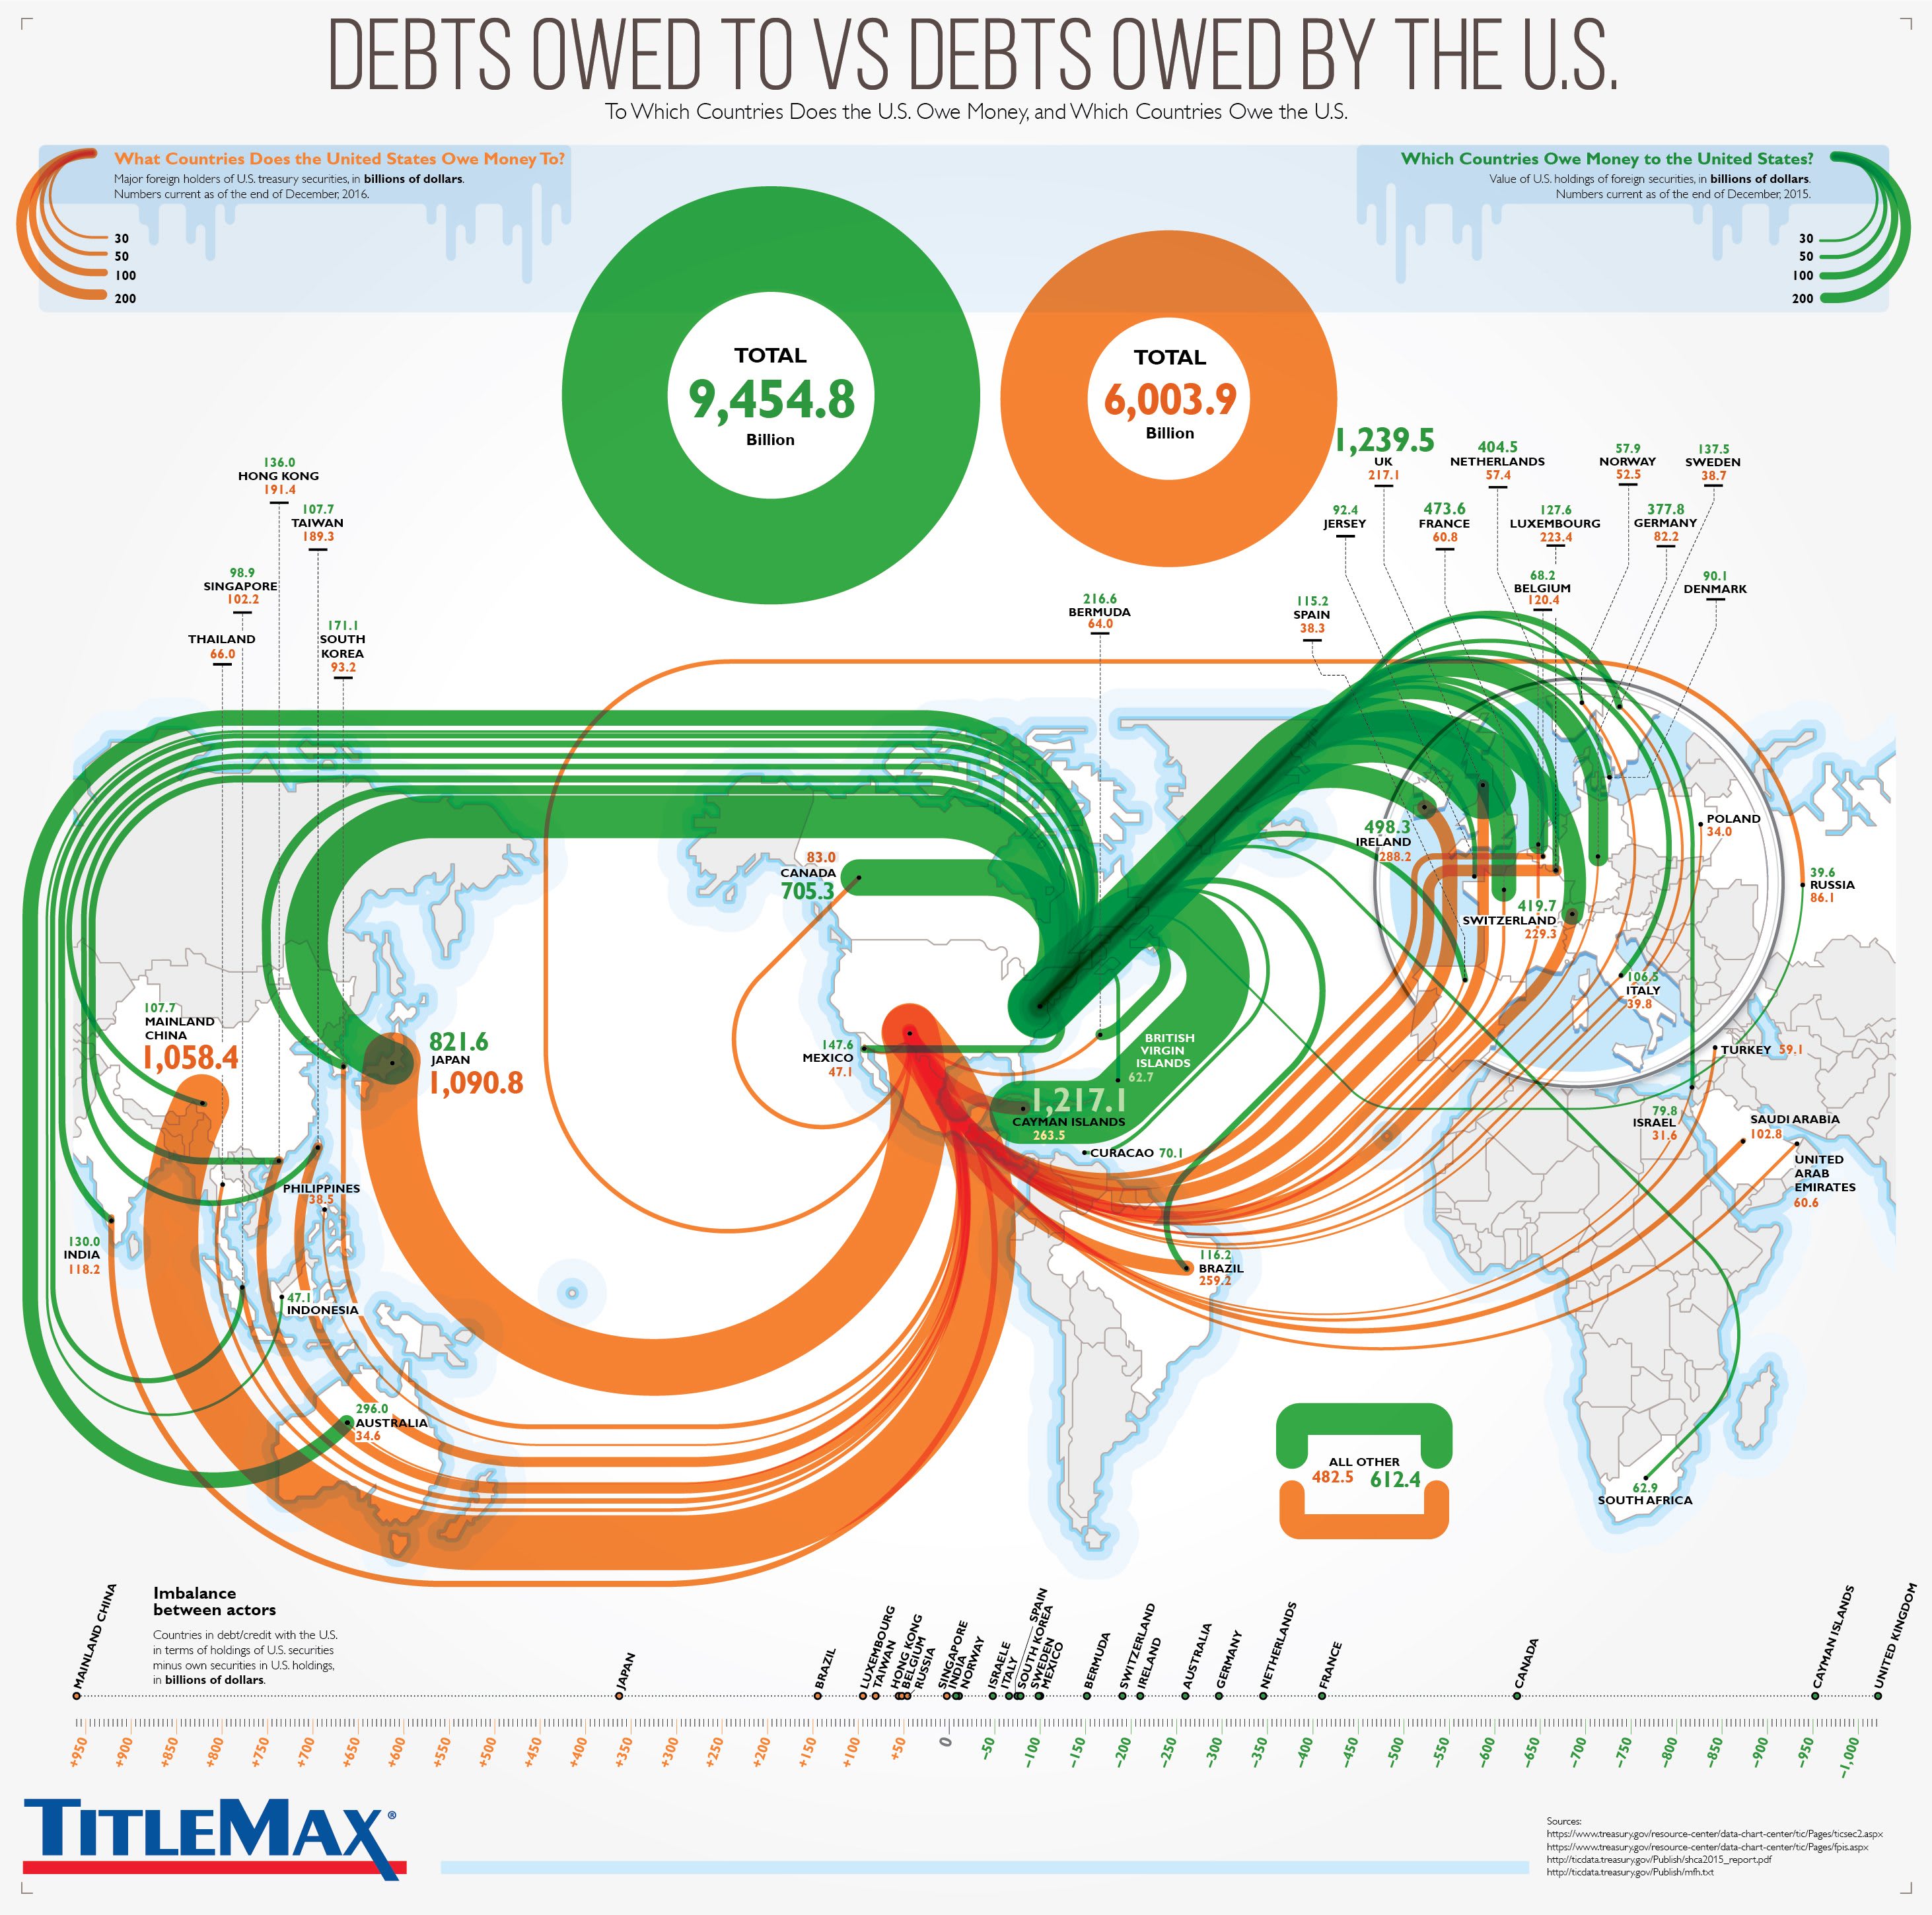 debts-owed-to-debts-owed-by-the-united-states.jpg